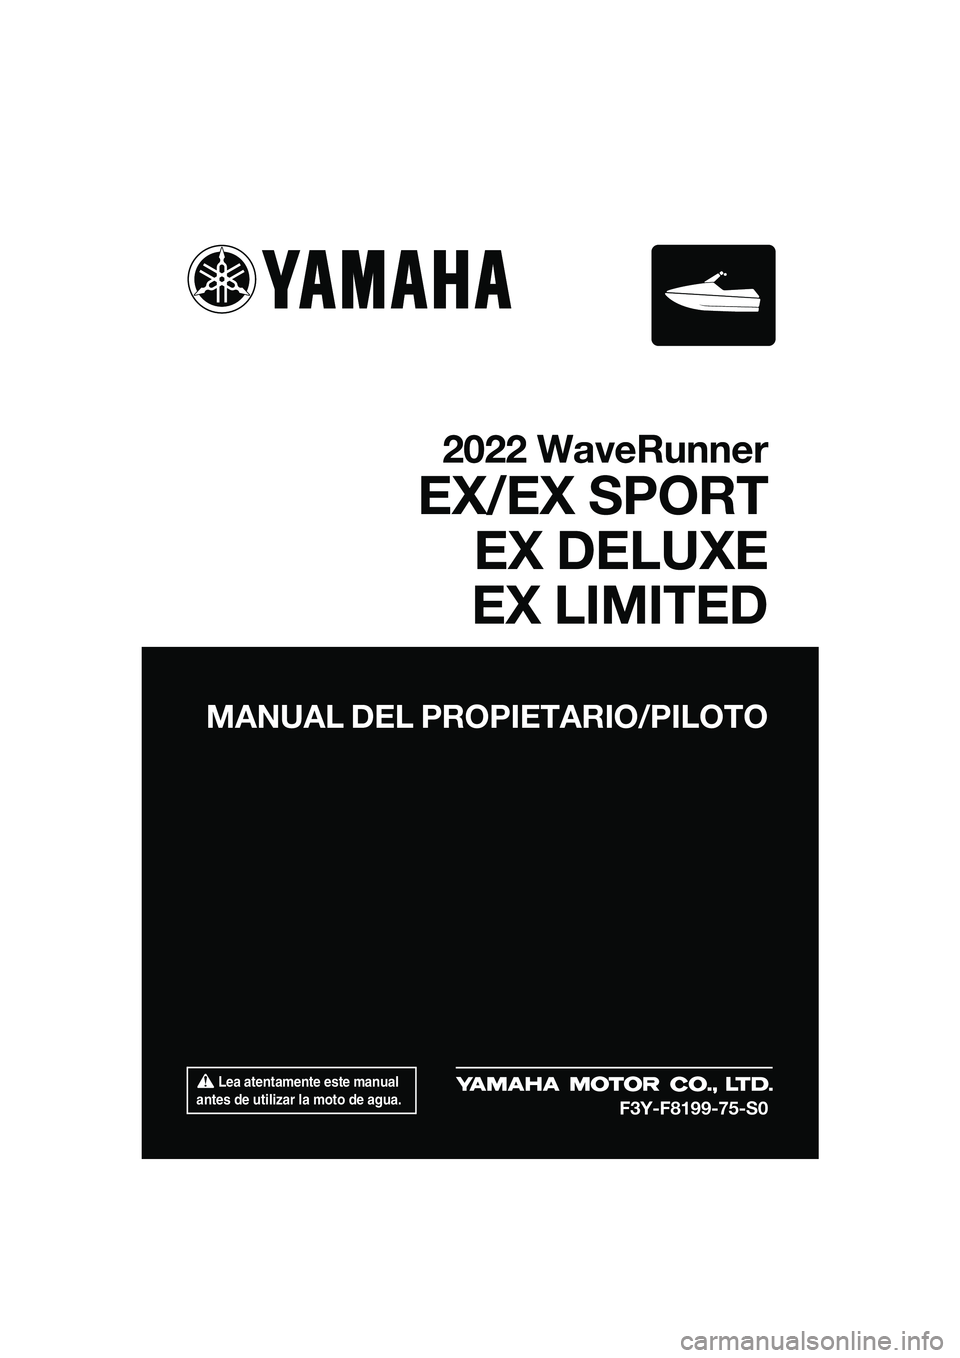 YAMAHA EX DELUXE 2022  Manuale de Empleo (in Spanish)  Lea atentamente este manual 
antes de utilizar la moto de agua.
MANUAL DEL PROPIETARIO/PILOTO
2022 WaveRunner
EX/EX SPORT EX DELUXE
EX LIMITED
F3Y-F8199-75-S0
UF3Y75S0.book  Page 1  Monday, July 19, 